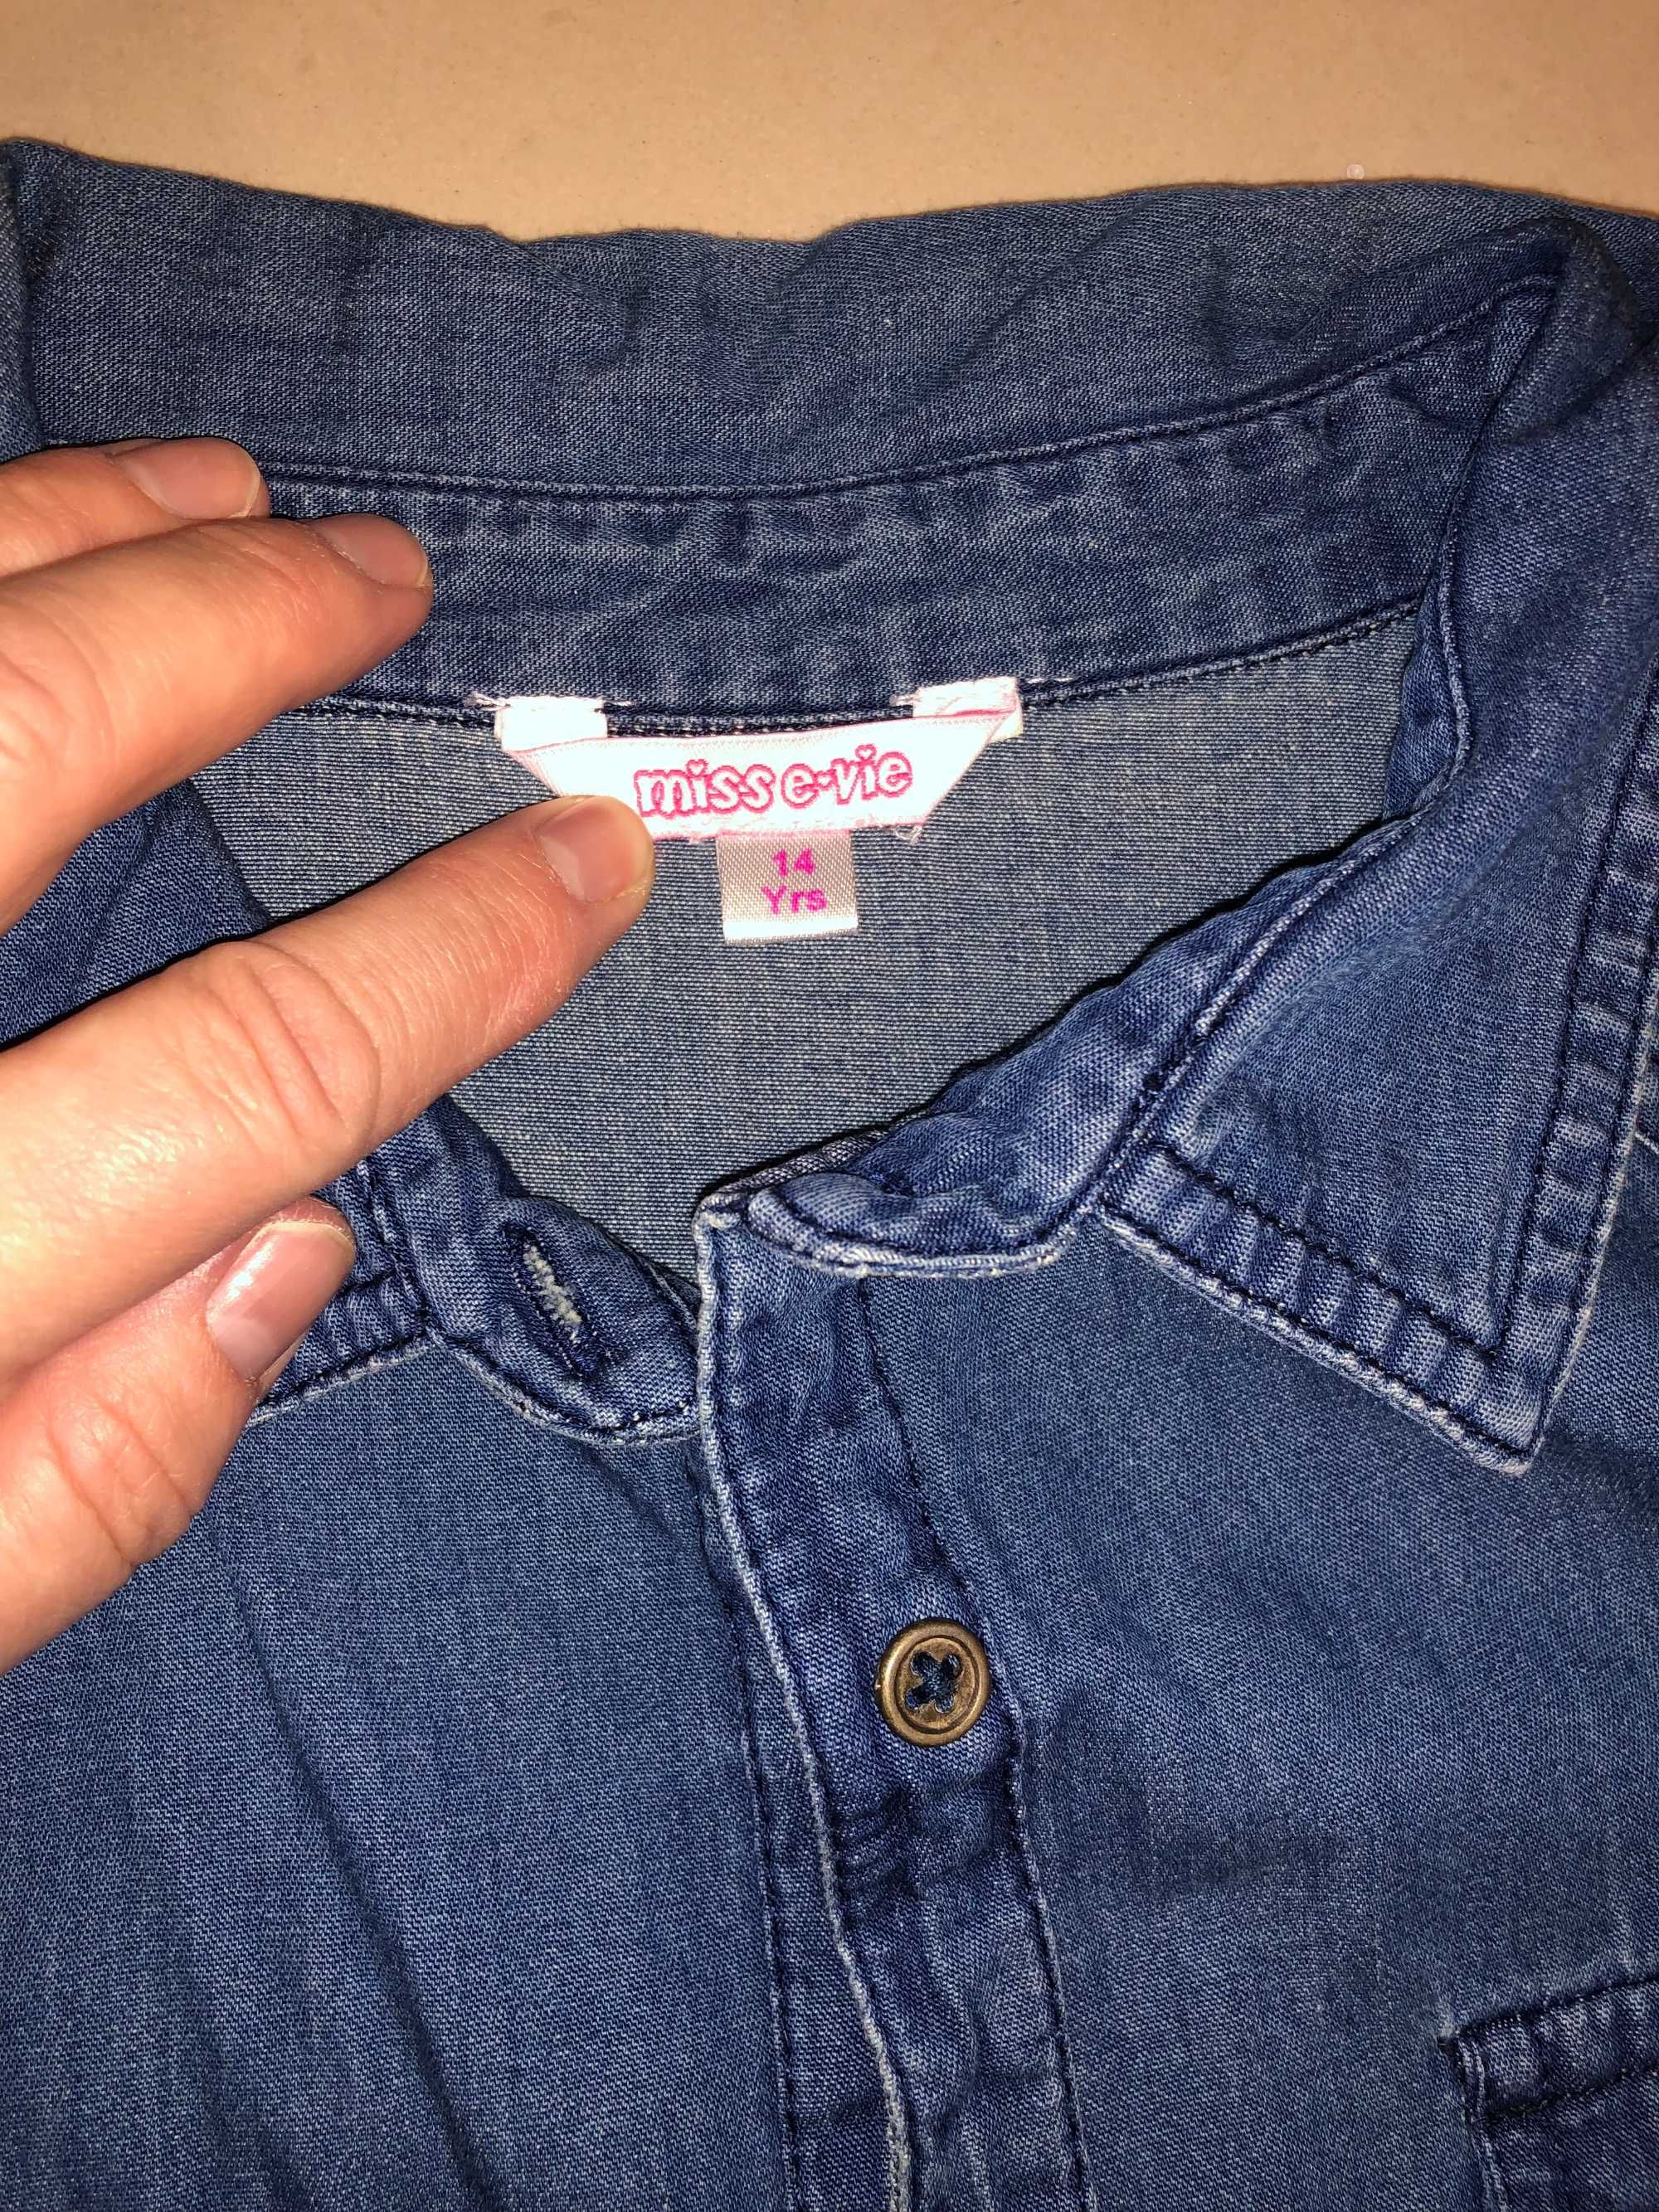 Camasa jeans Miss E-vie, noua fara eticheta, pt. 14-15 ani